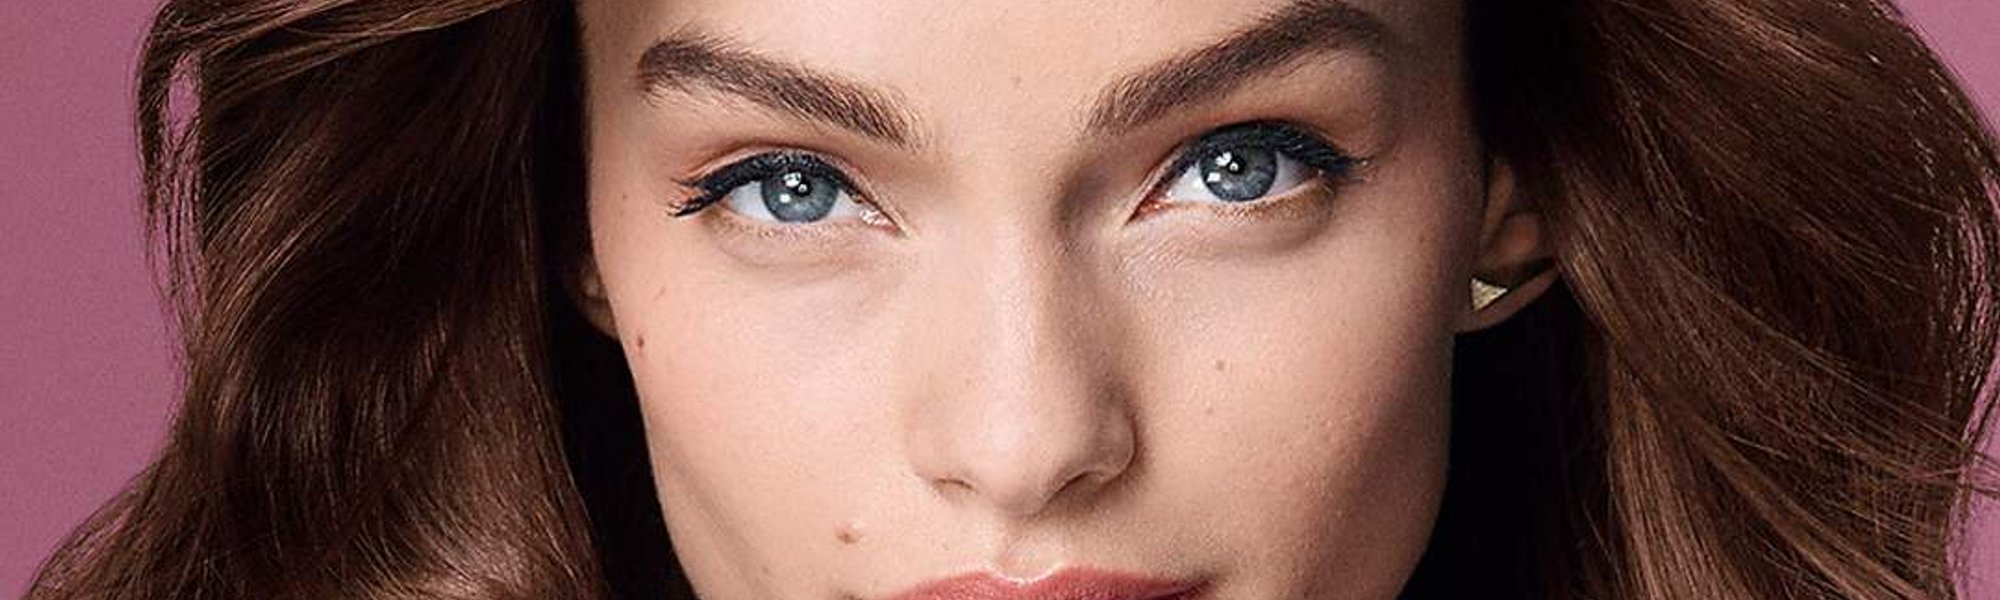 Cómo es el maquillaje para pieles sensibles con rojeces | L'Oréal Paris